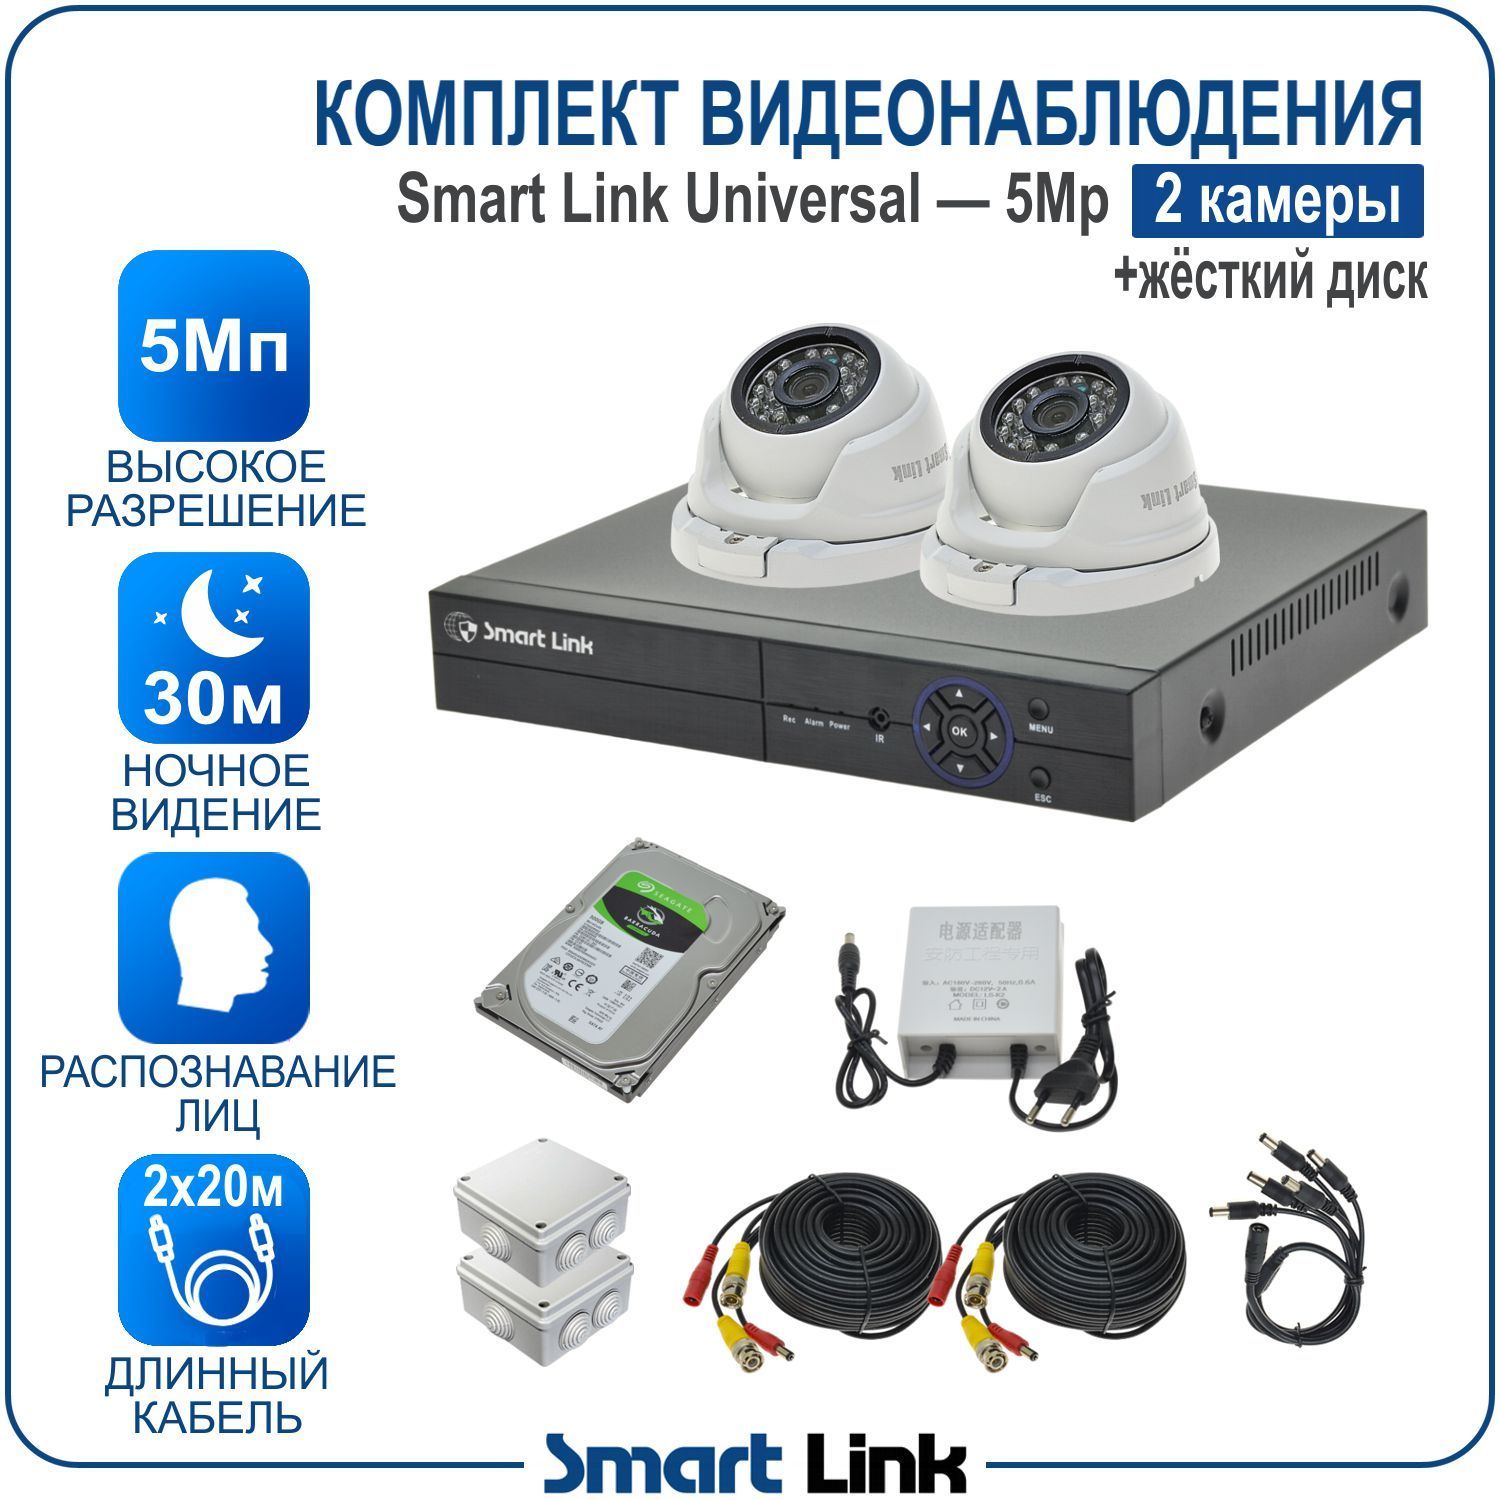 Комплект видеонаблюдения Smart Link SL-5M5N2M-H на 2 уличные 5Мп камеры + жесткий диск комплект видеонаблюдения ahd ps link kit b226hd 8 камер 2мп внутренние и уличные